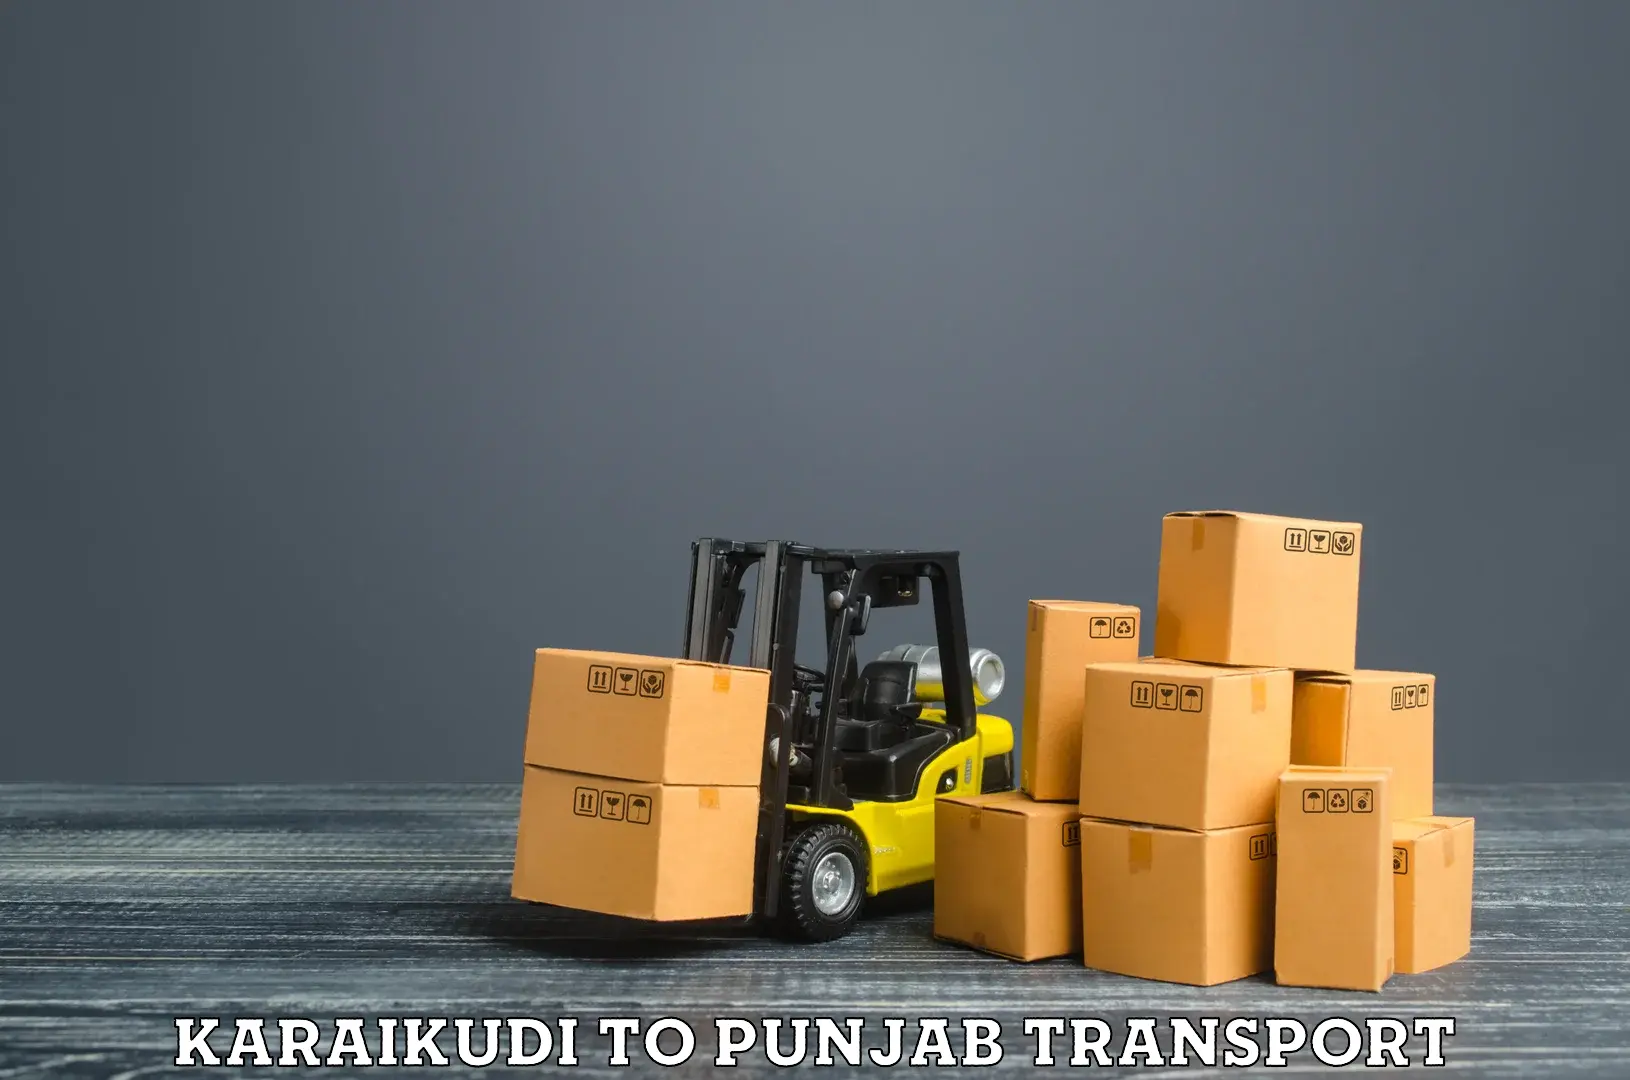 Vehicle transport services in Karaikudi to Abohar